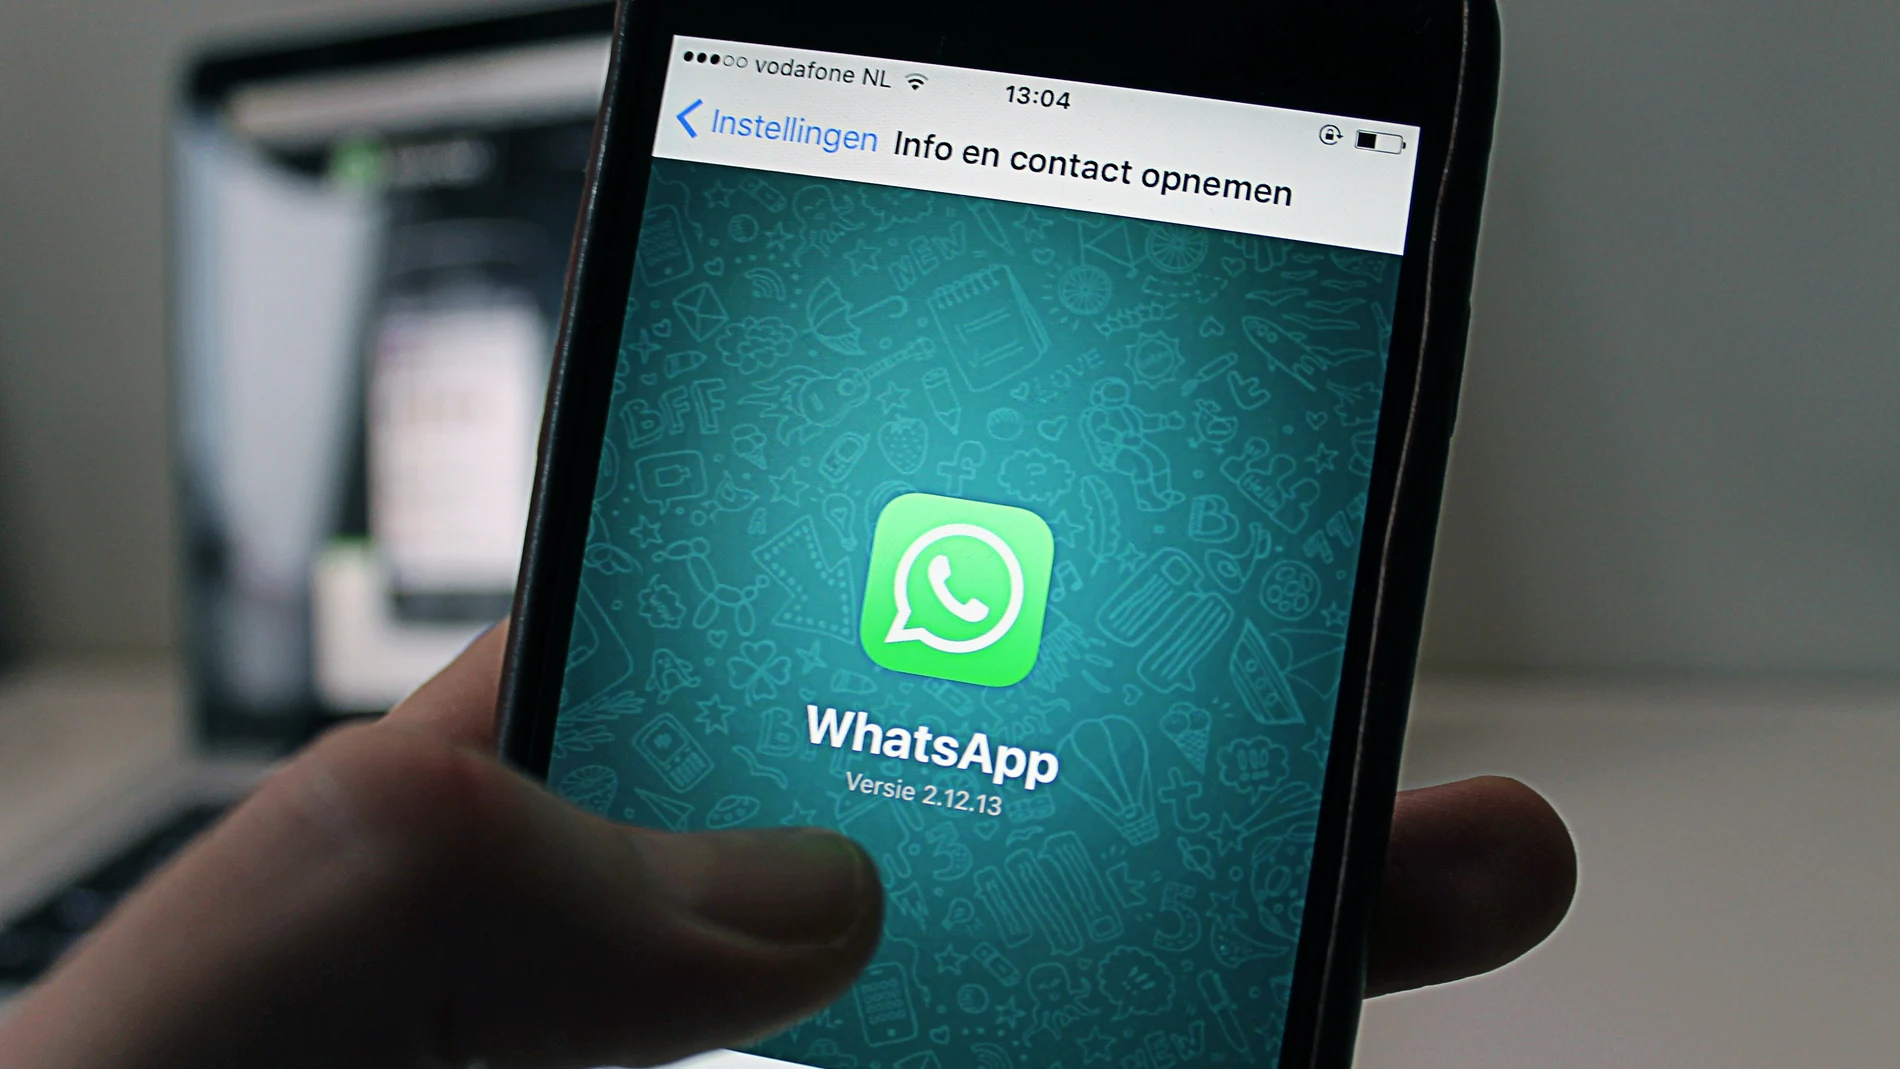 Cómo archivar los grupos de WhatsApp para desconectar en vacaciones